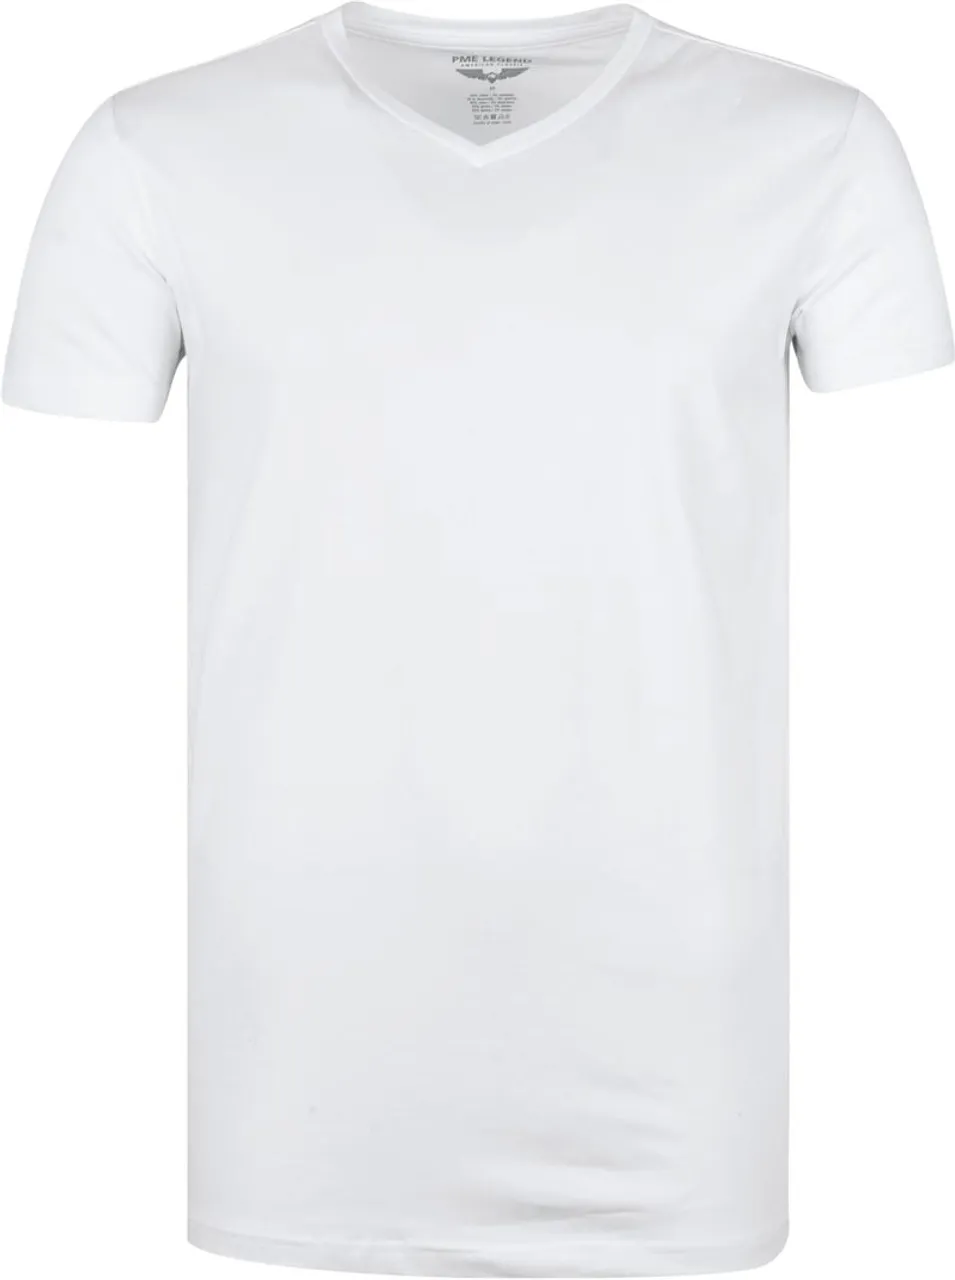 PME Legend Basic T-shirt 2-Pack V-Hals Wit